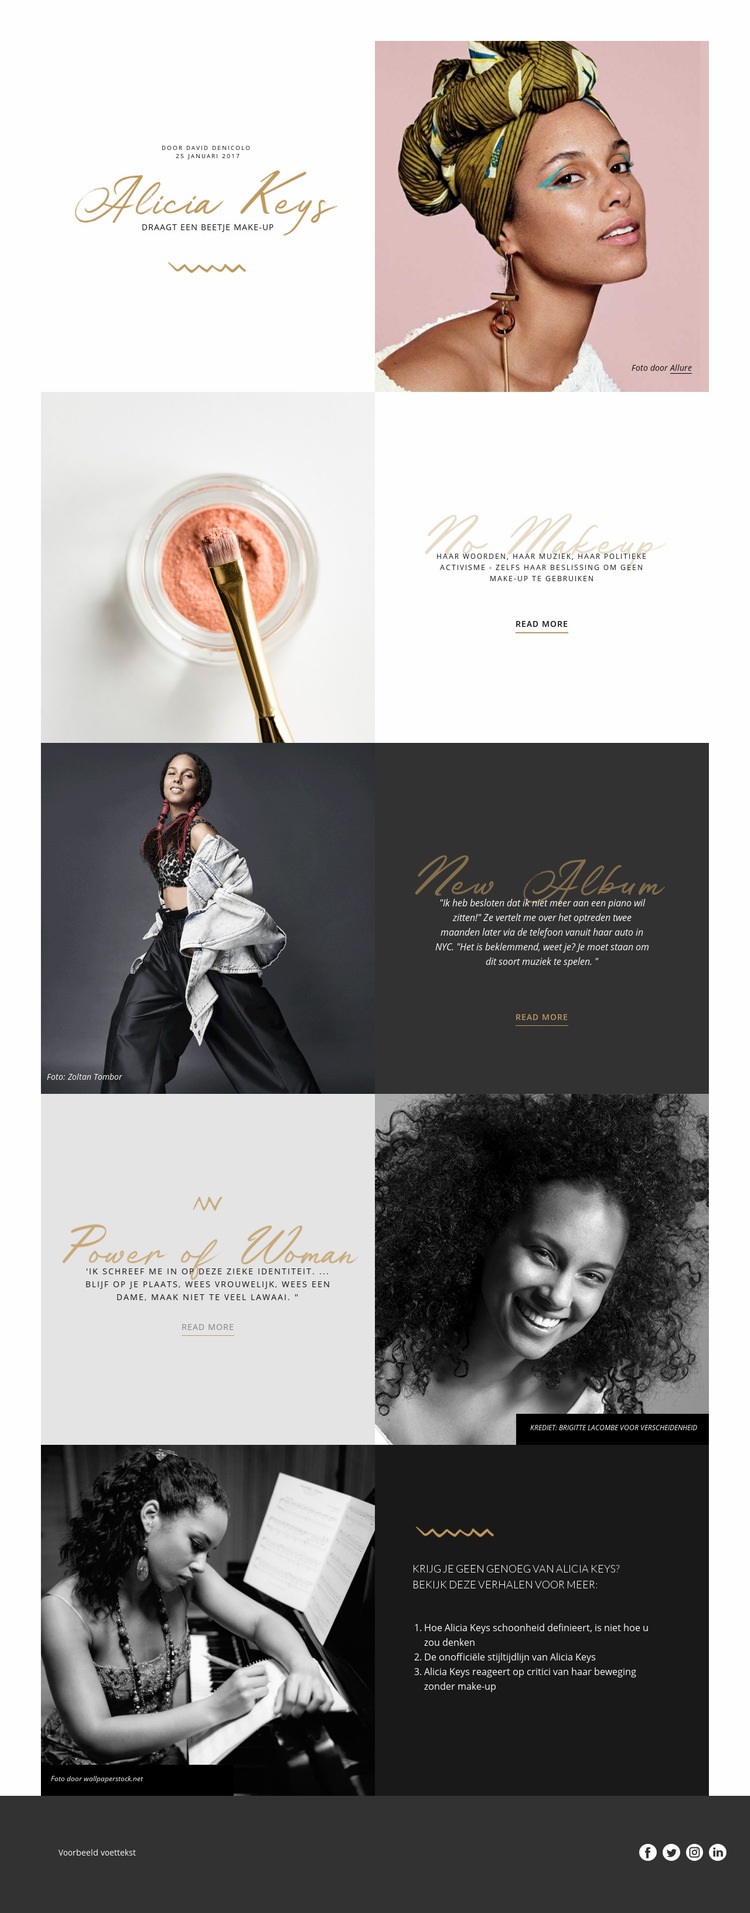 Alicia Keys Website ontwerp